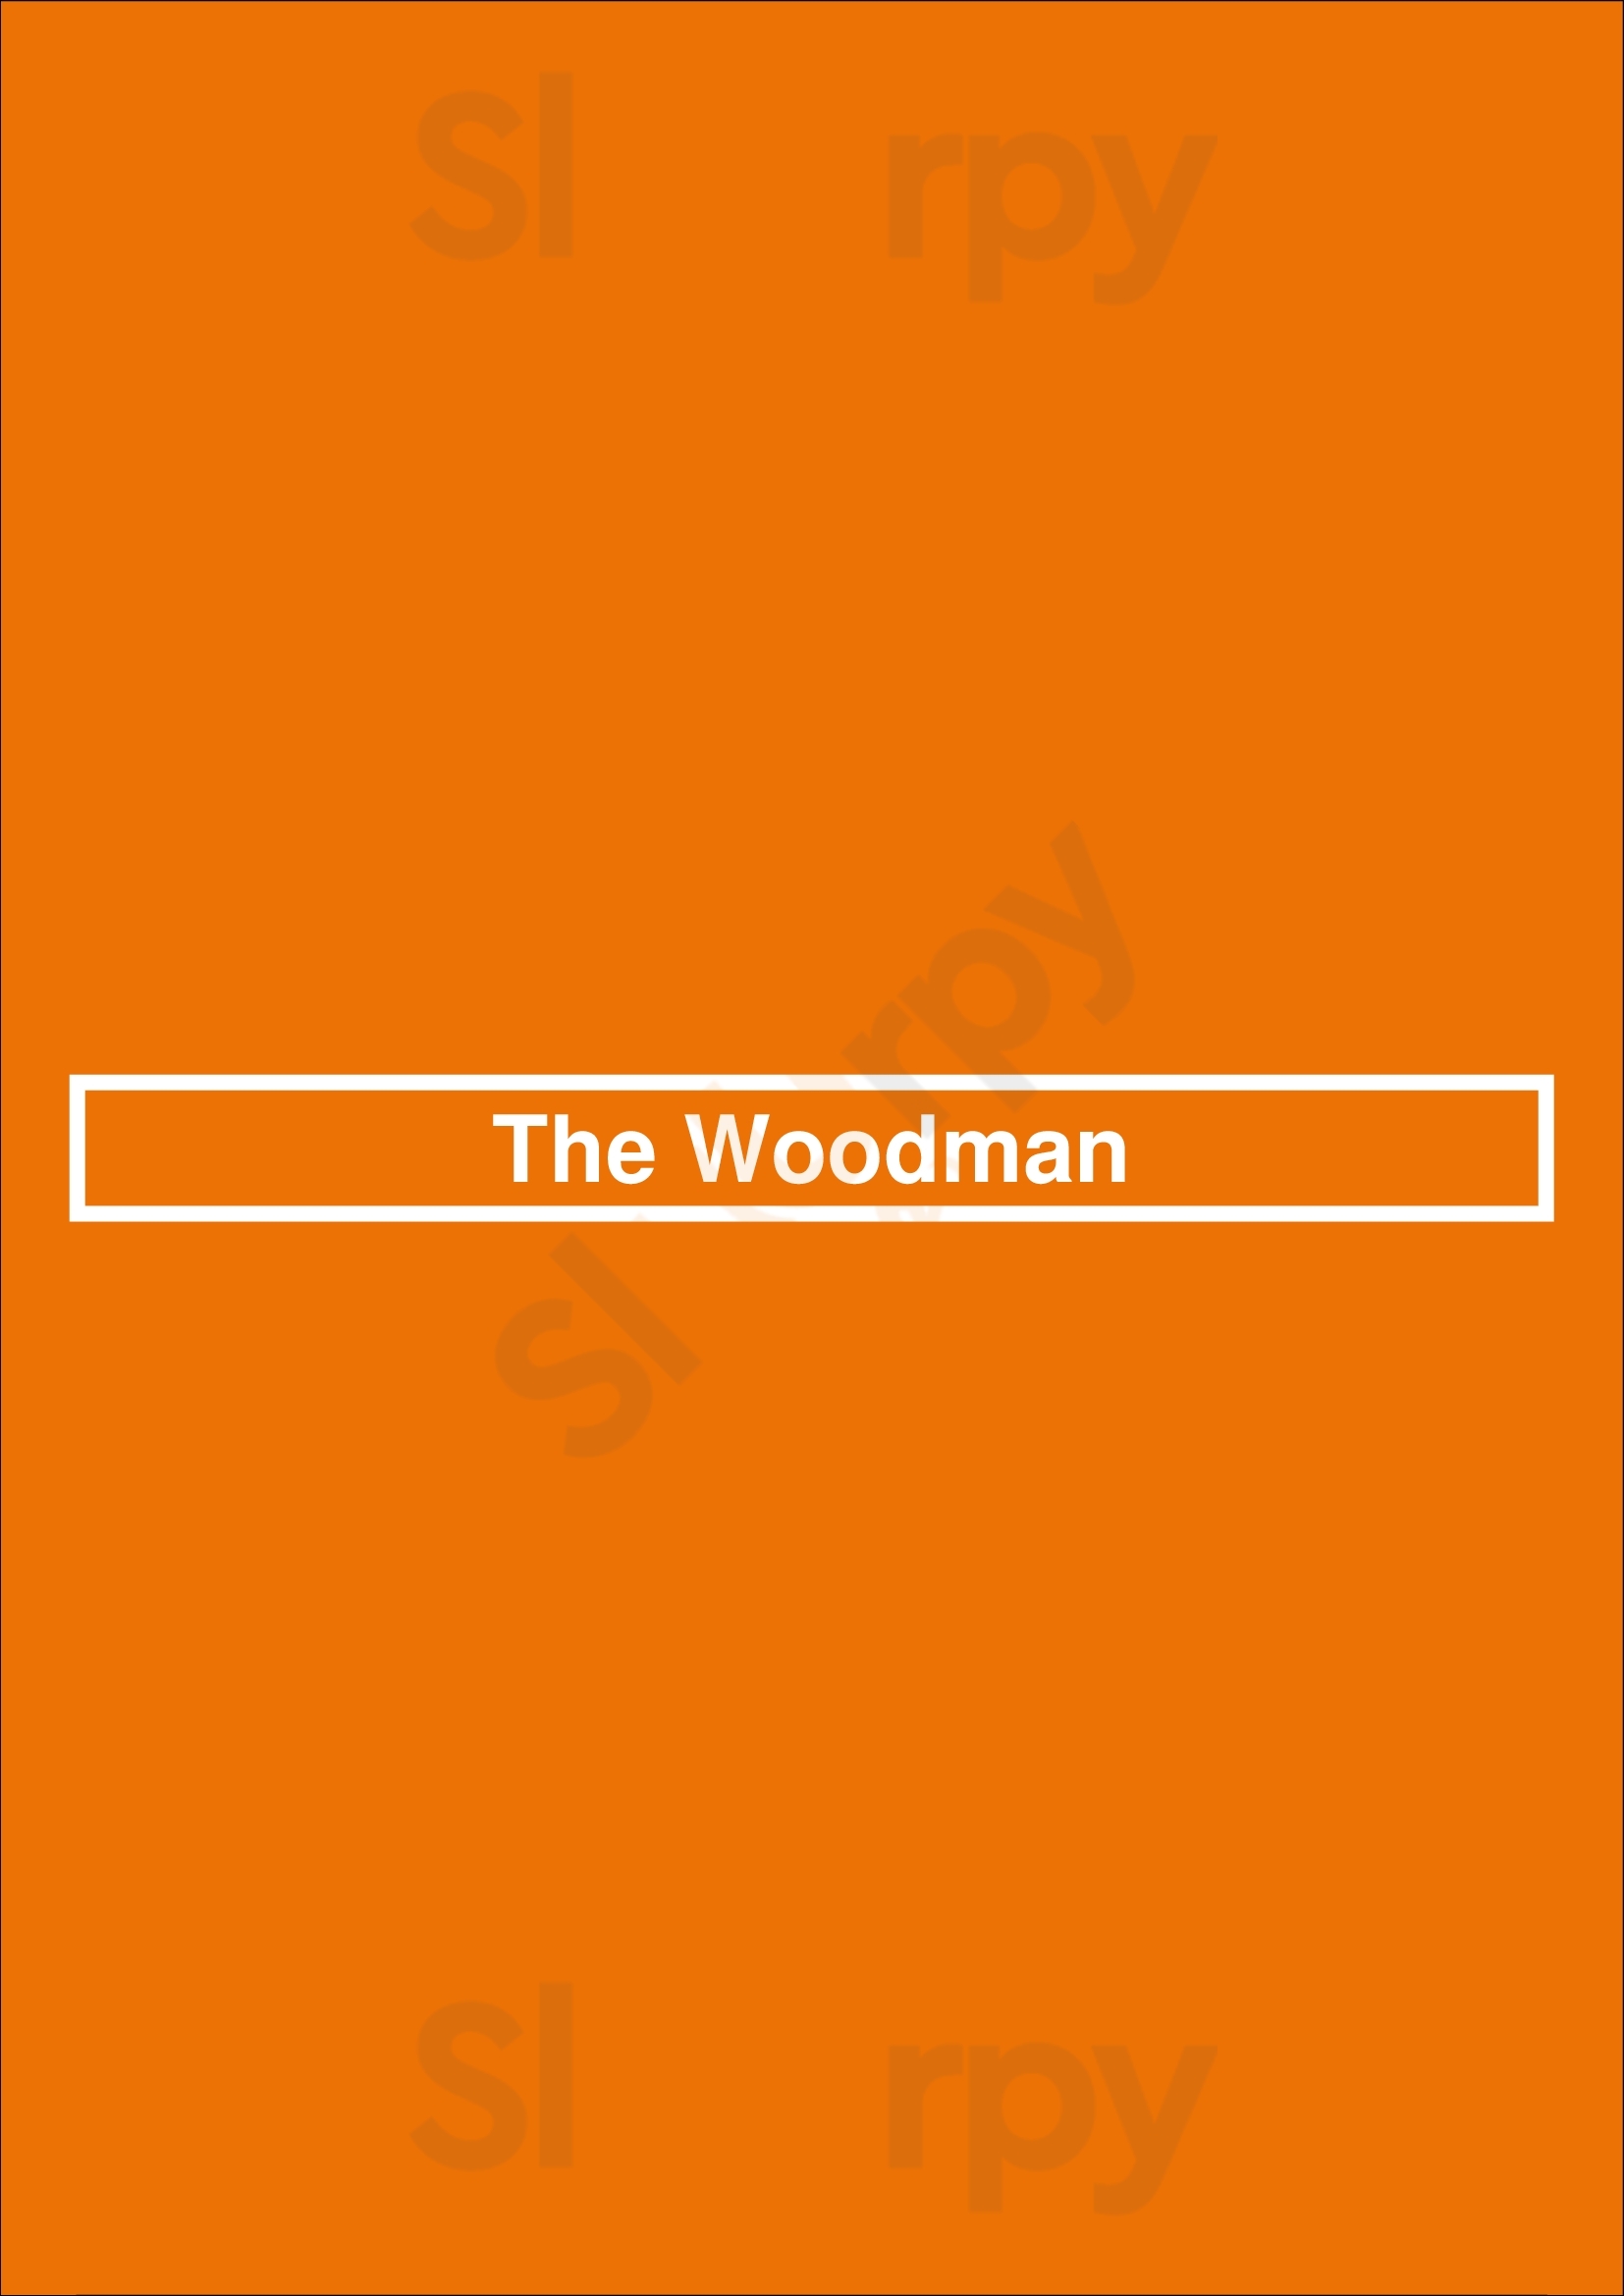 The Woodman Los Angeles Menu - 1